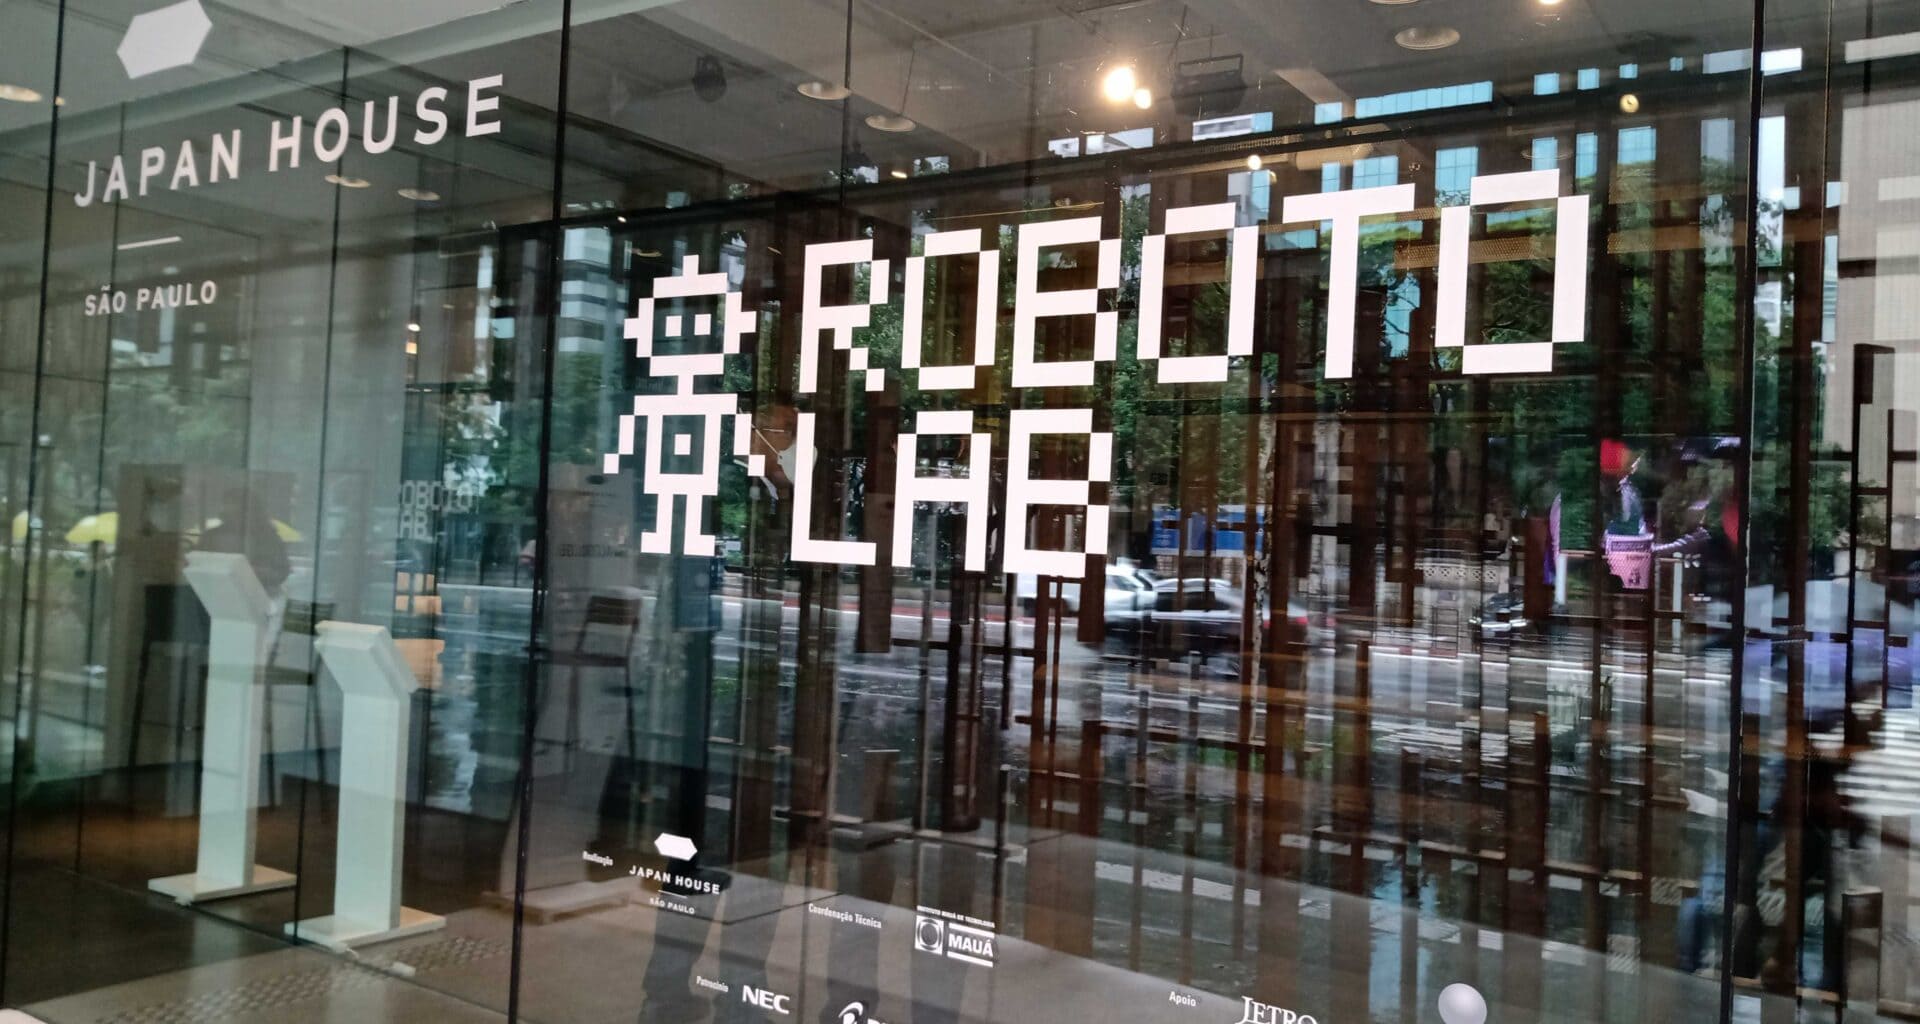 Roboto lab - japan houve - evento gratuito em sp